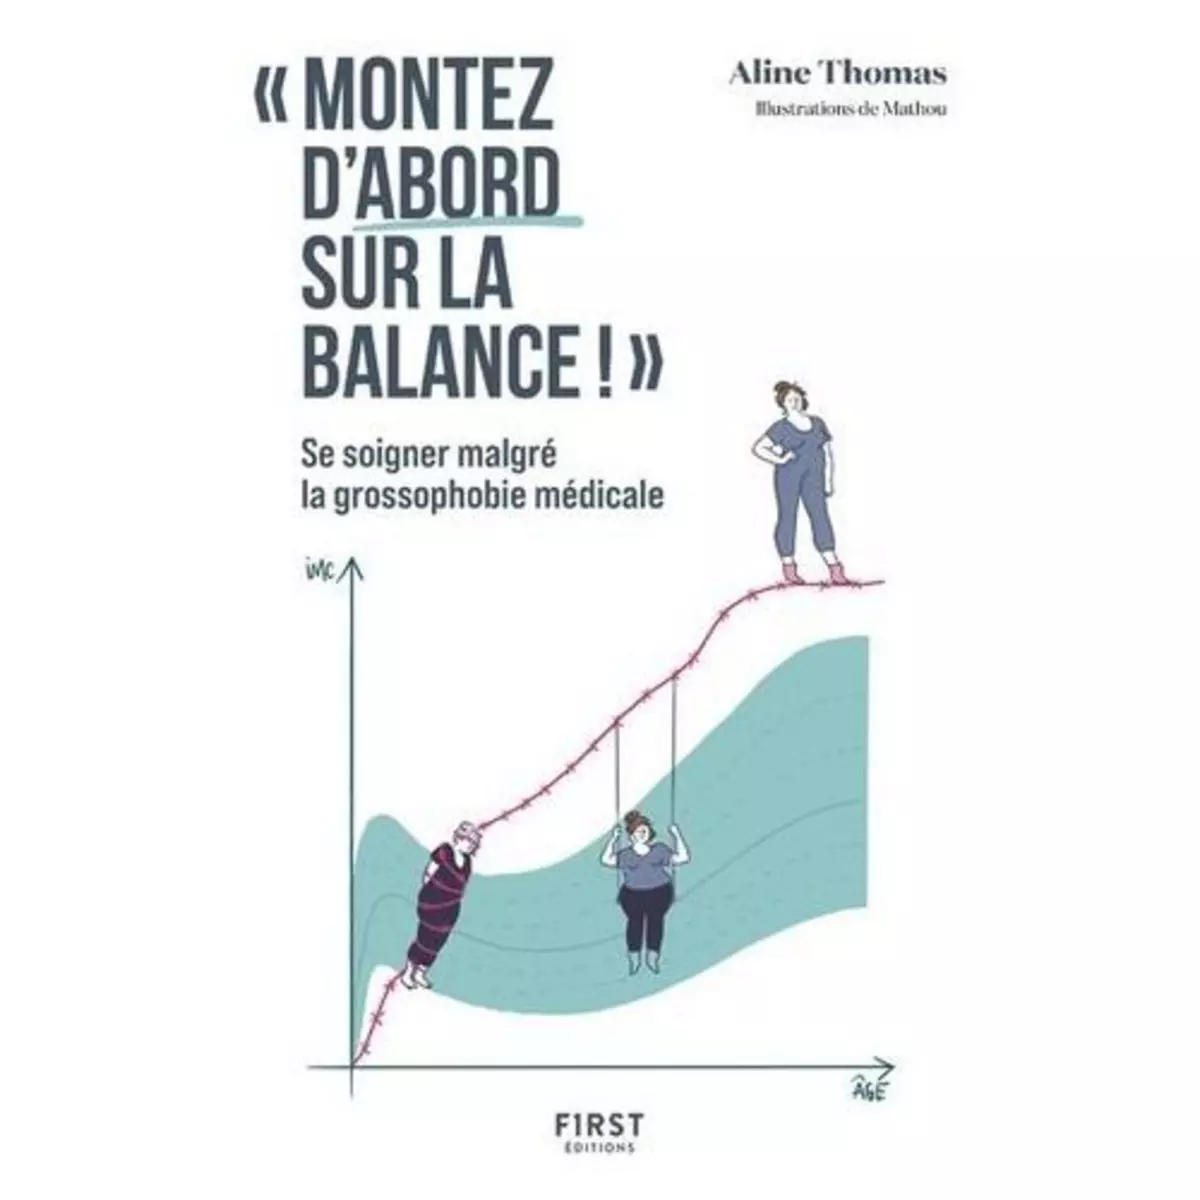   MONTEZ D'ABORD SUR LA BALANCE . SE SOIGNER MALGRE LA GROSSOPHOBIE MEDICALE, Thomas Aline